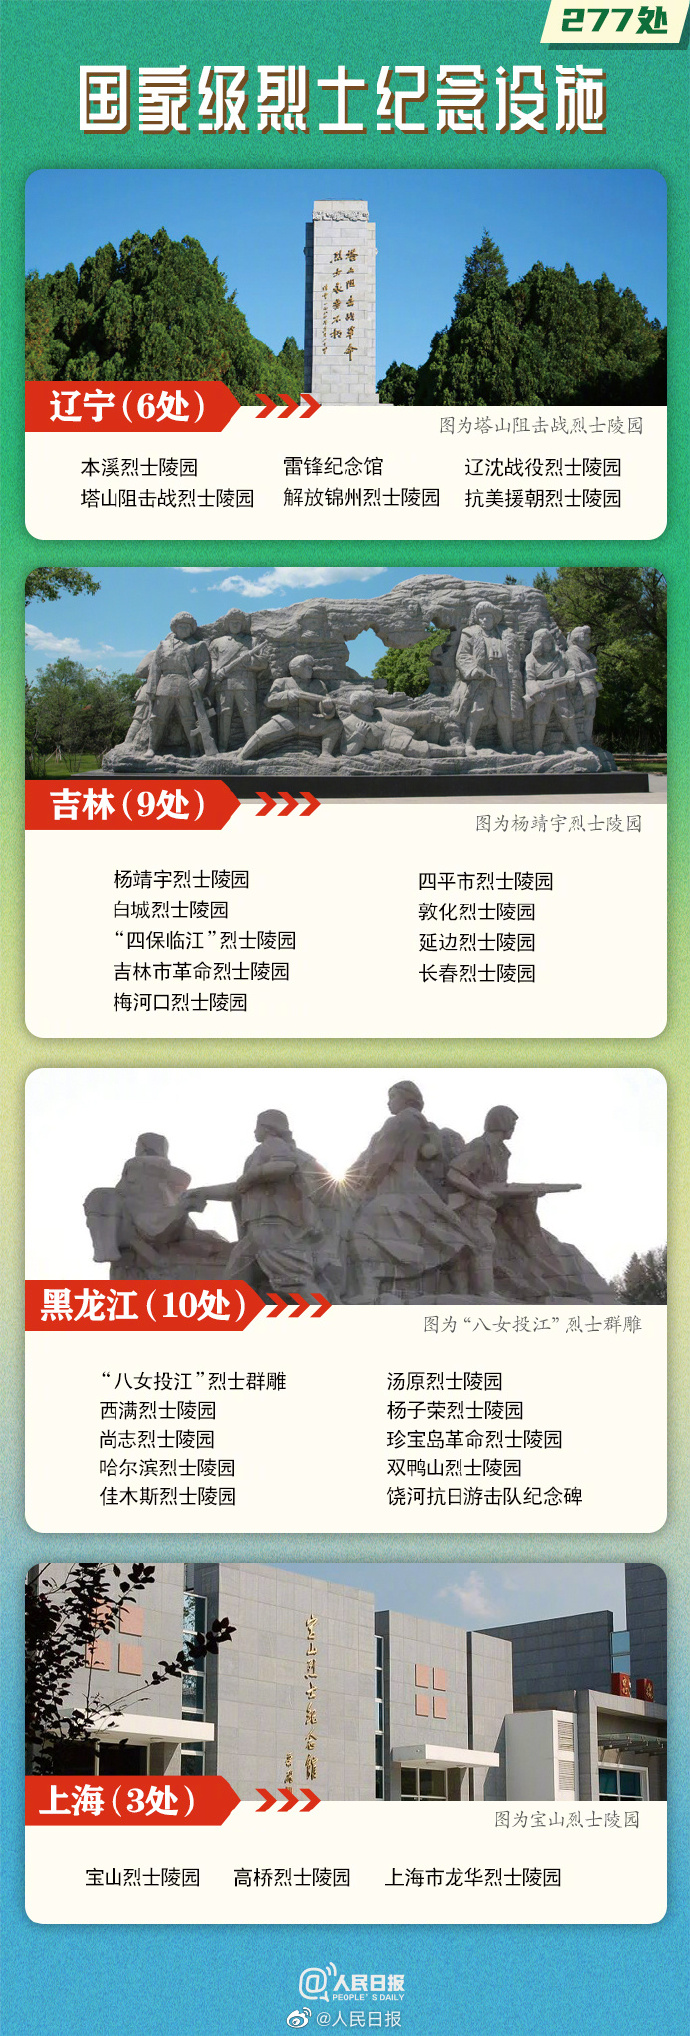 277处国家级烈士纪念设施名单公布，云南9处2.jpg